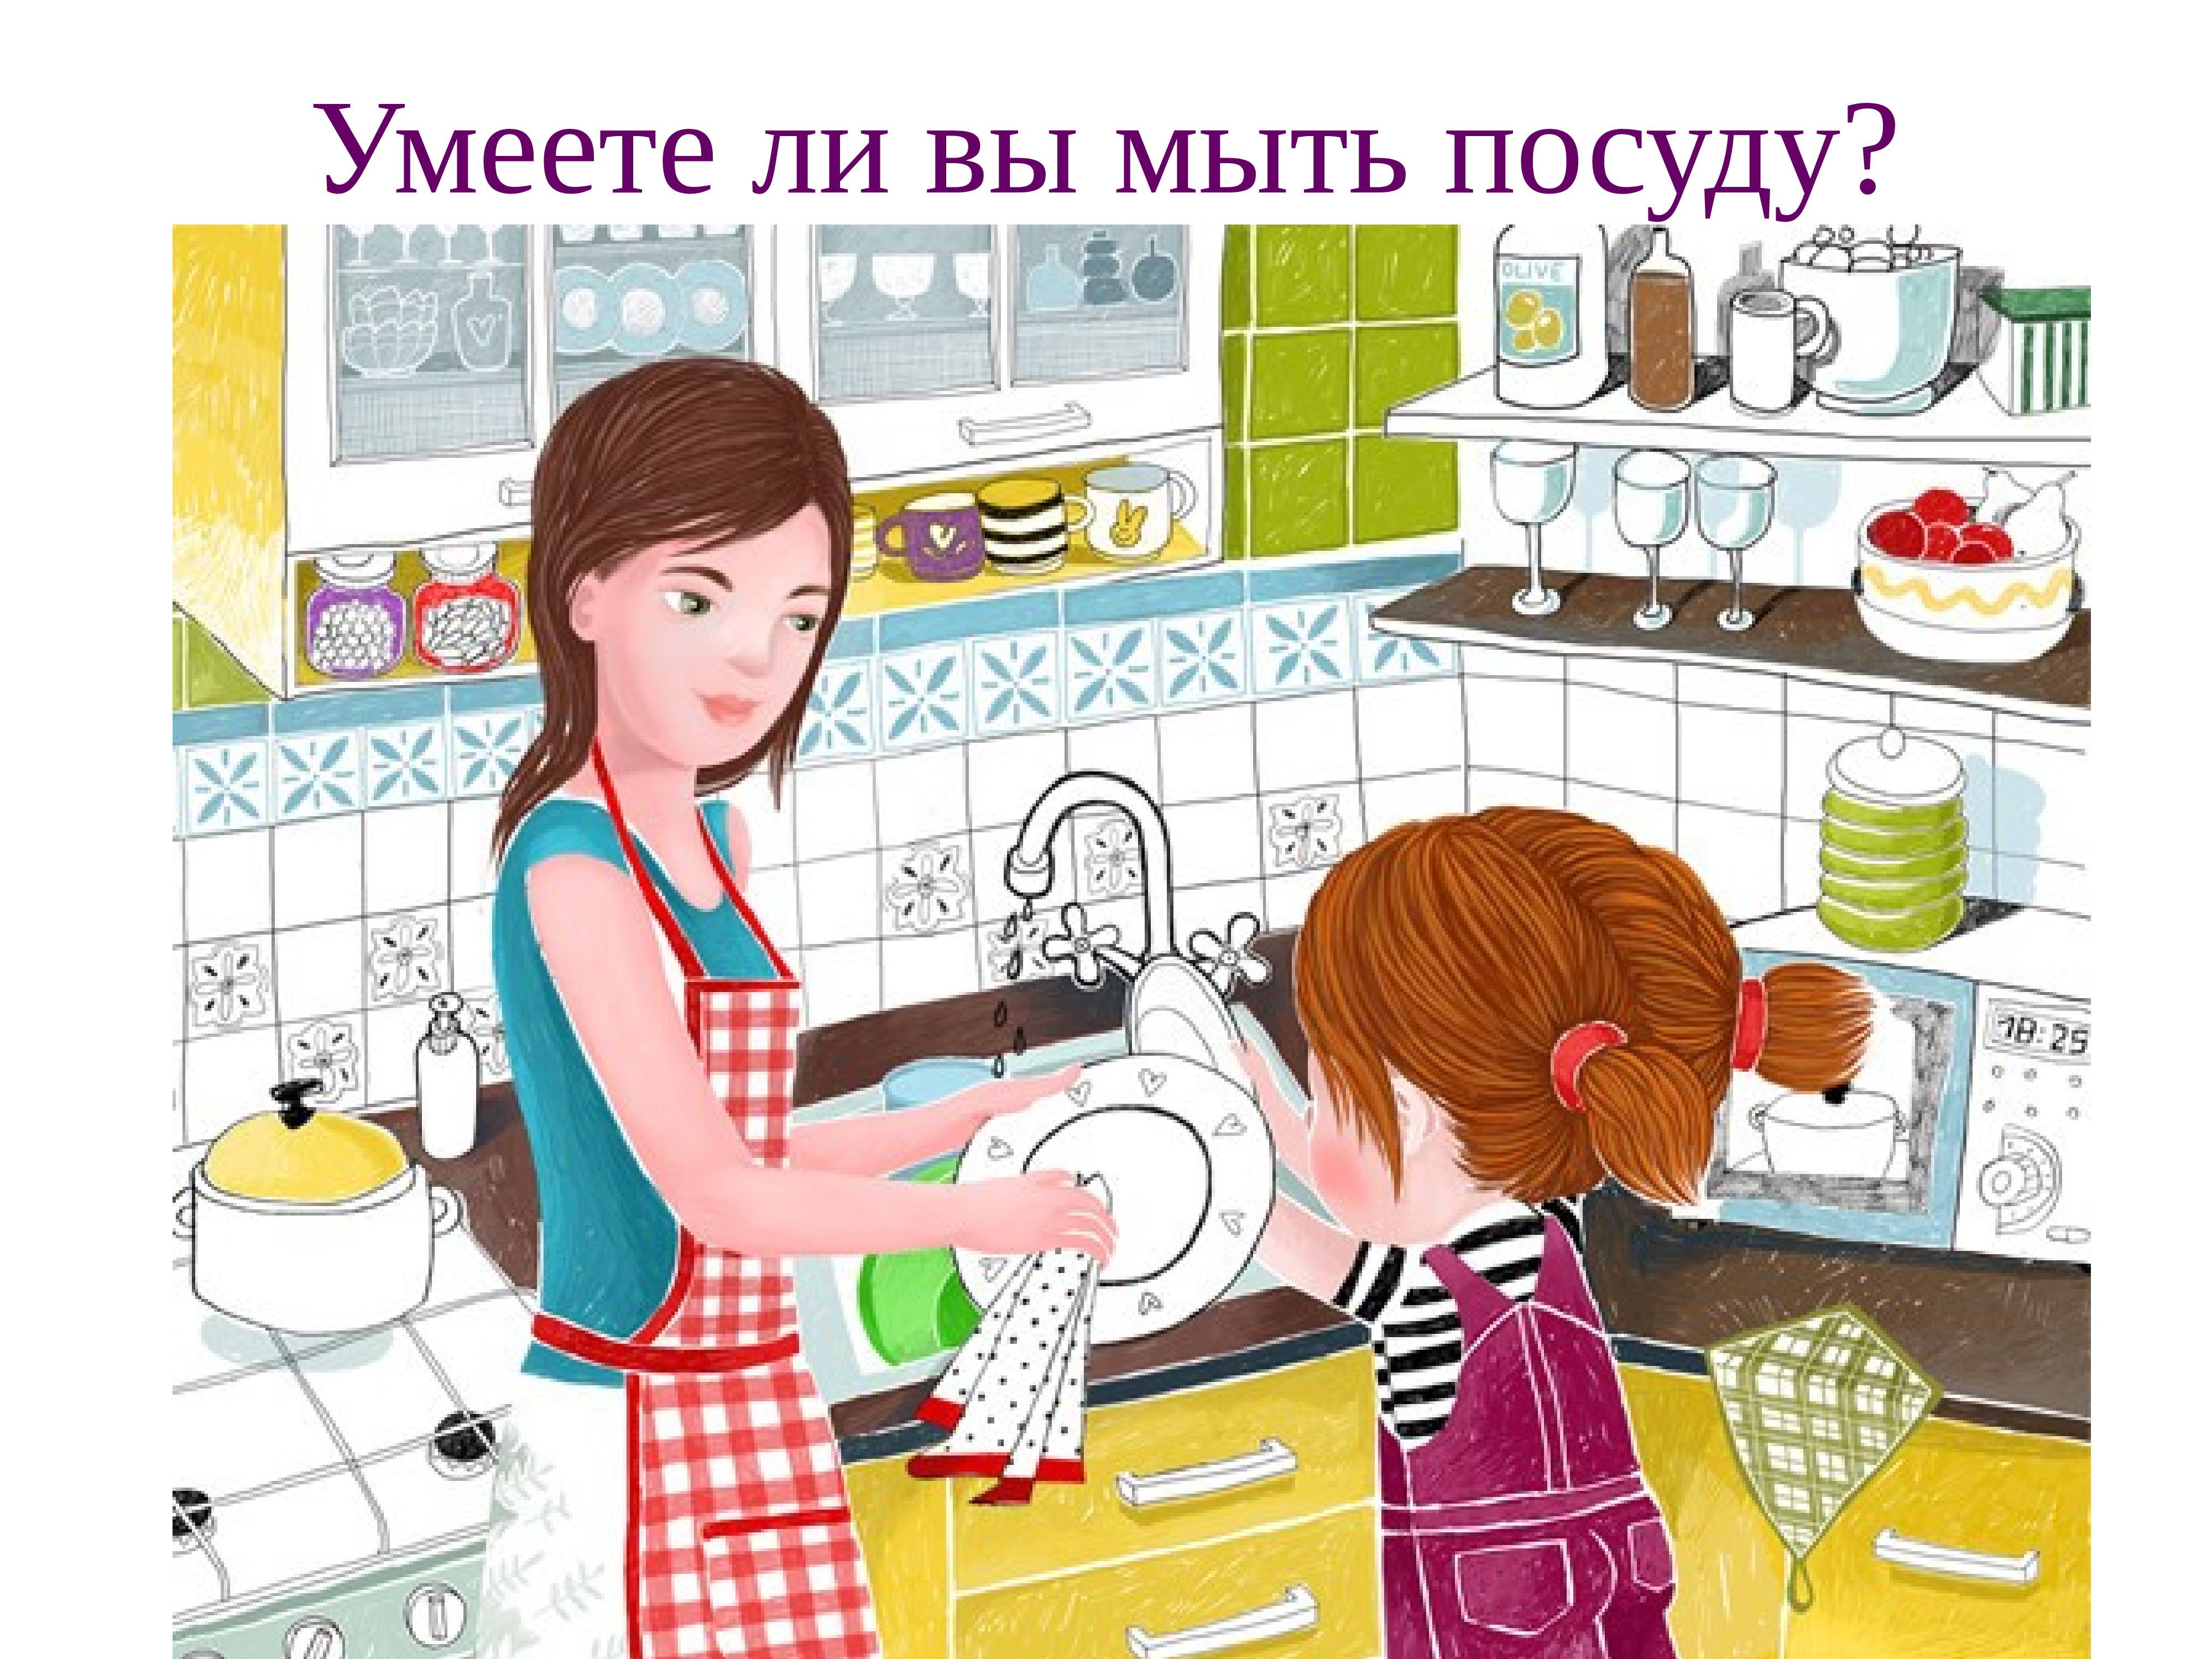 Игра что делает мама. Мама моет посуду. Помогает маме картина. Мамин помощник рисунок. Картинки помогаю маме.